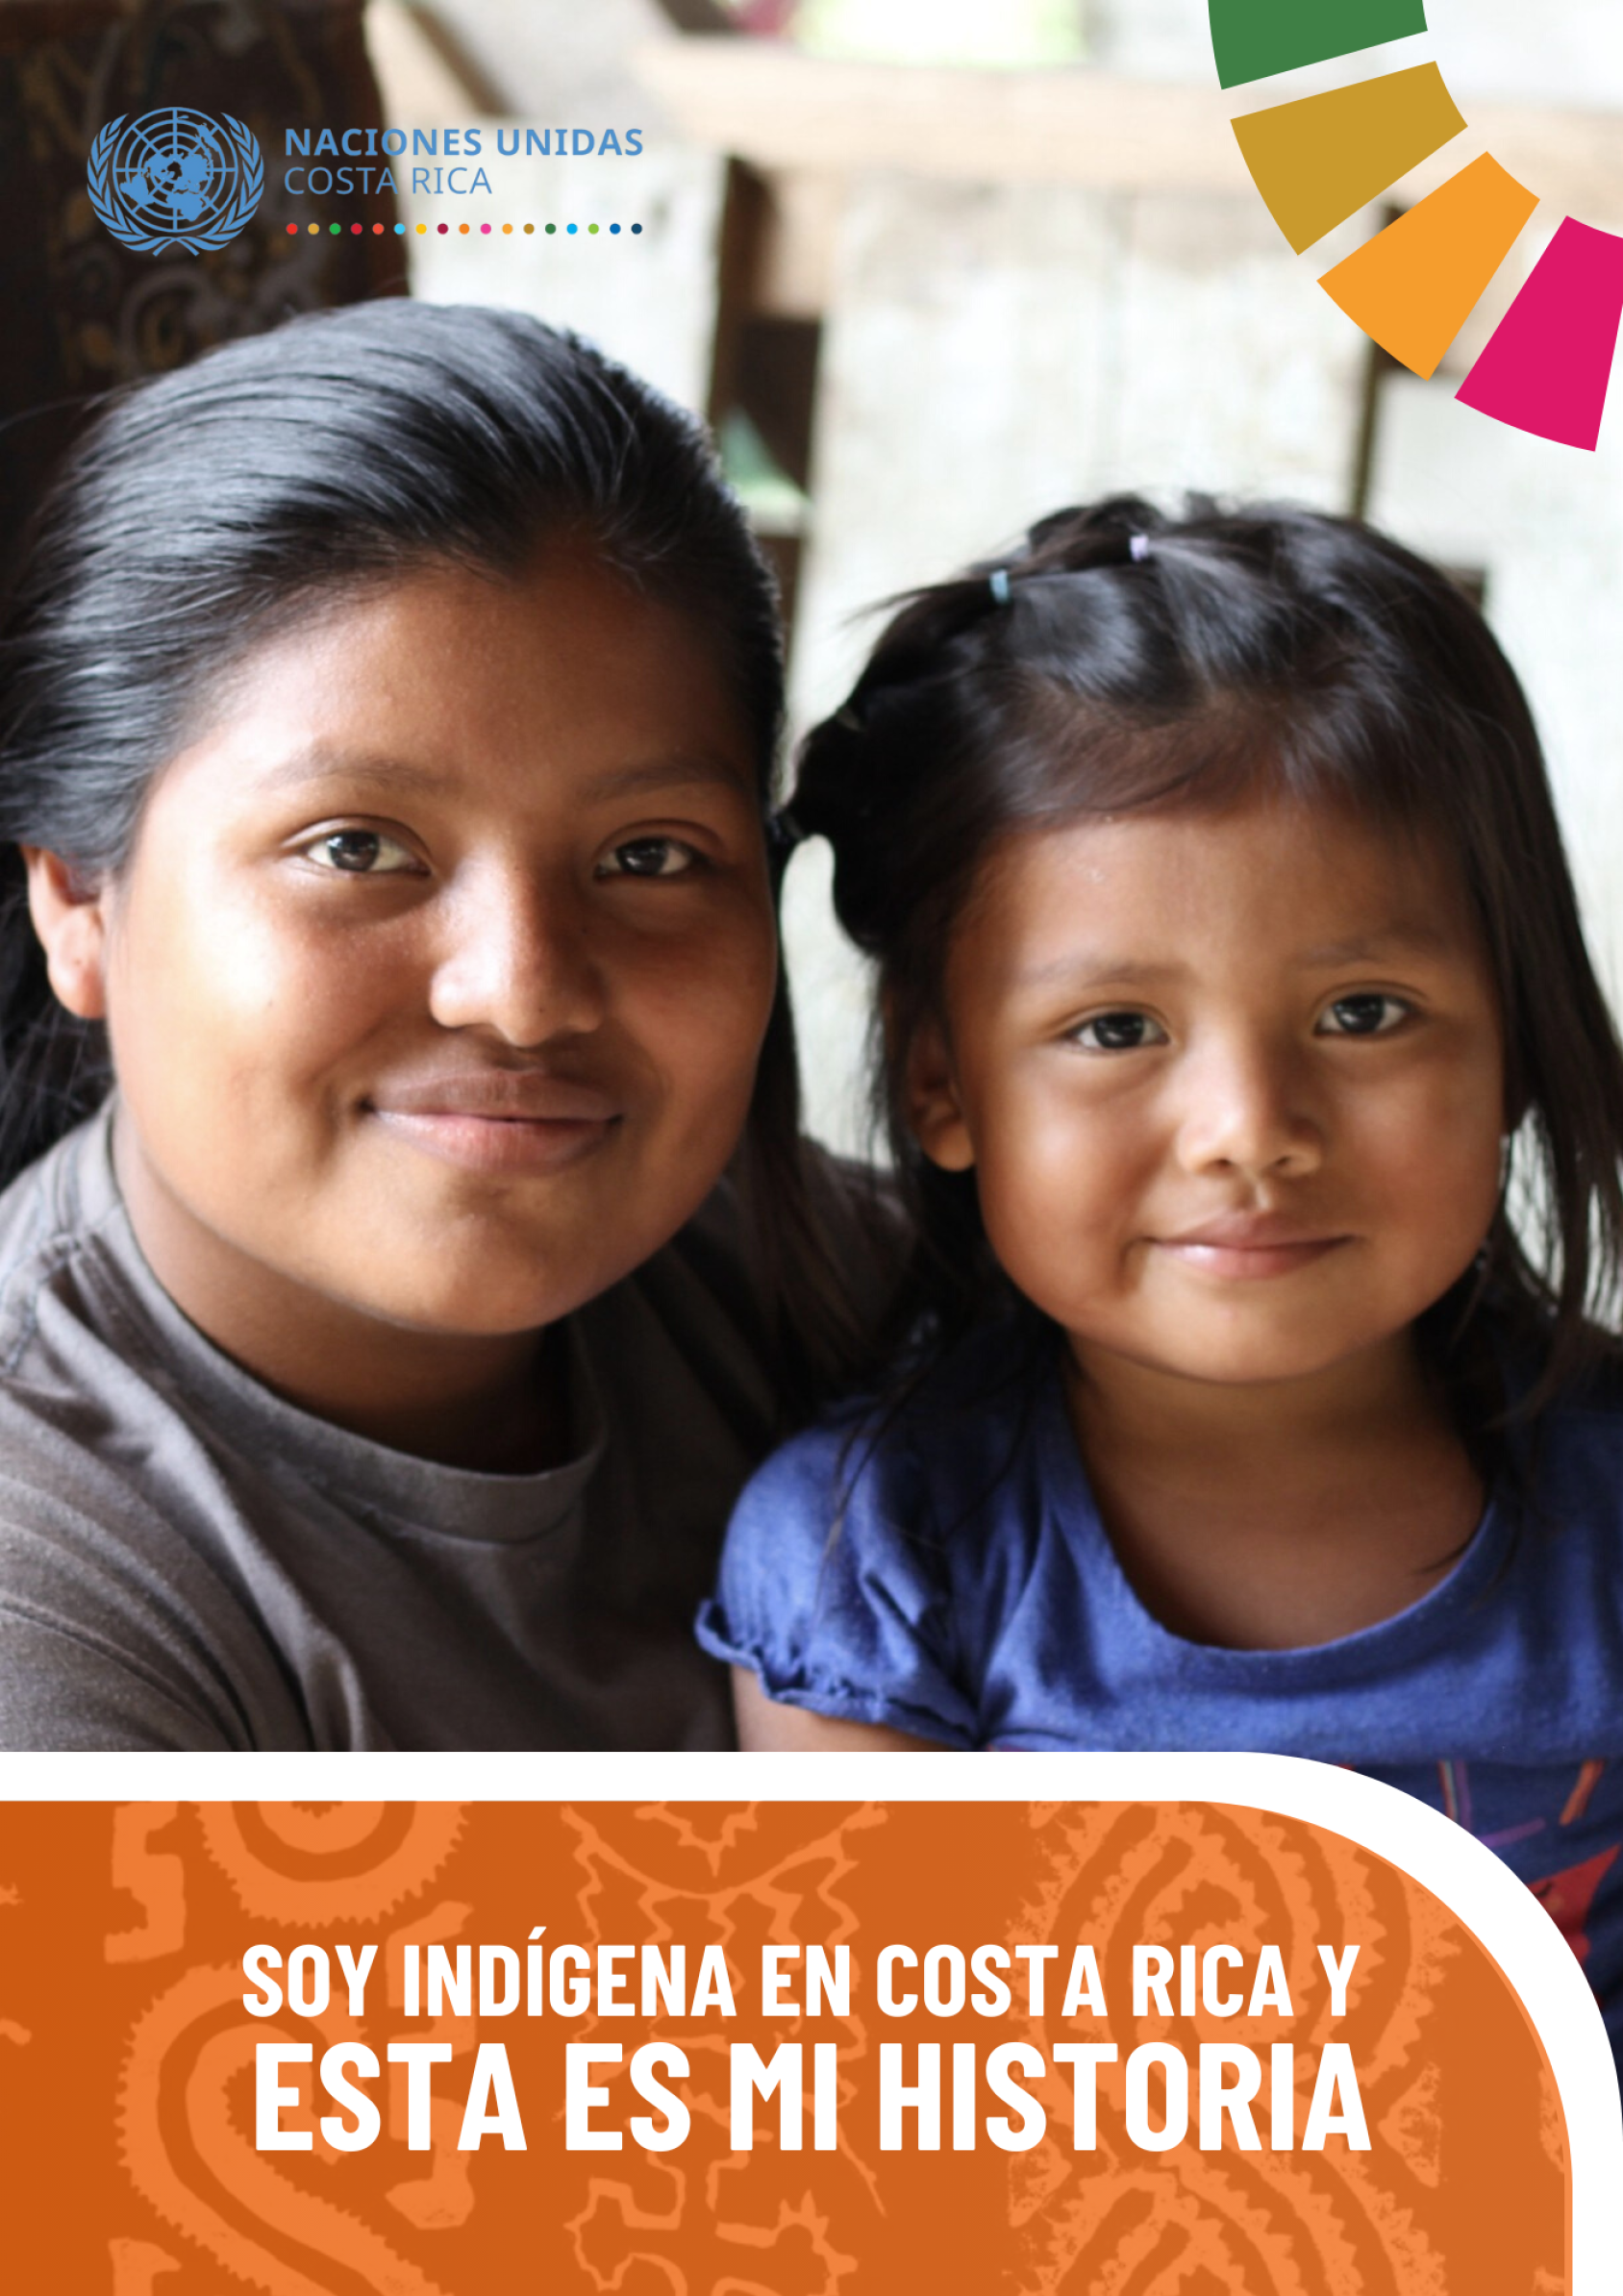 Retrato de una mujer y una niña pequeña que miran con determinación y alegría a la cámara. Esta imagen constituye la portada del libro "Soy indígena en Costa Rica y esta es mi historia" editado por las Naciones Unidas en Costa Rica.